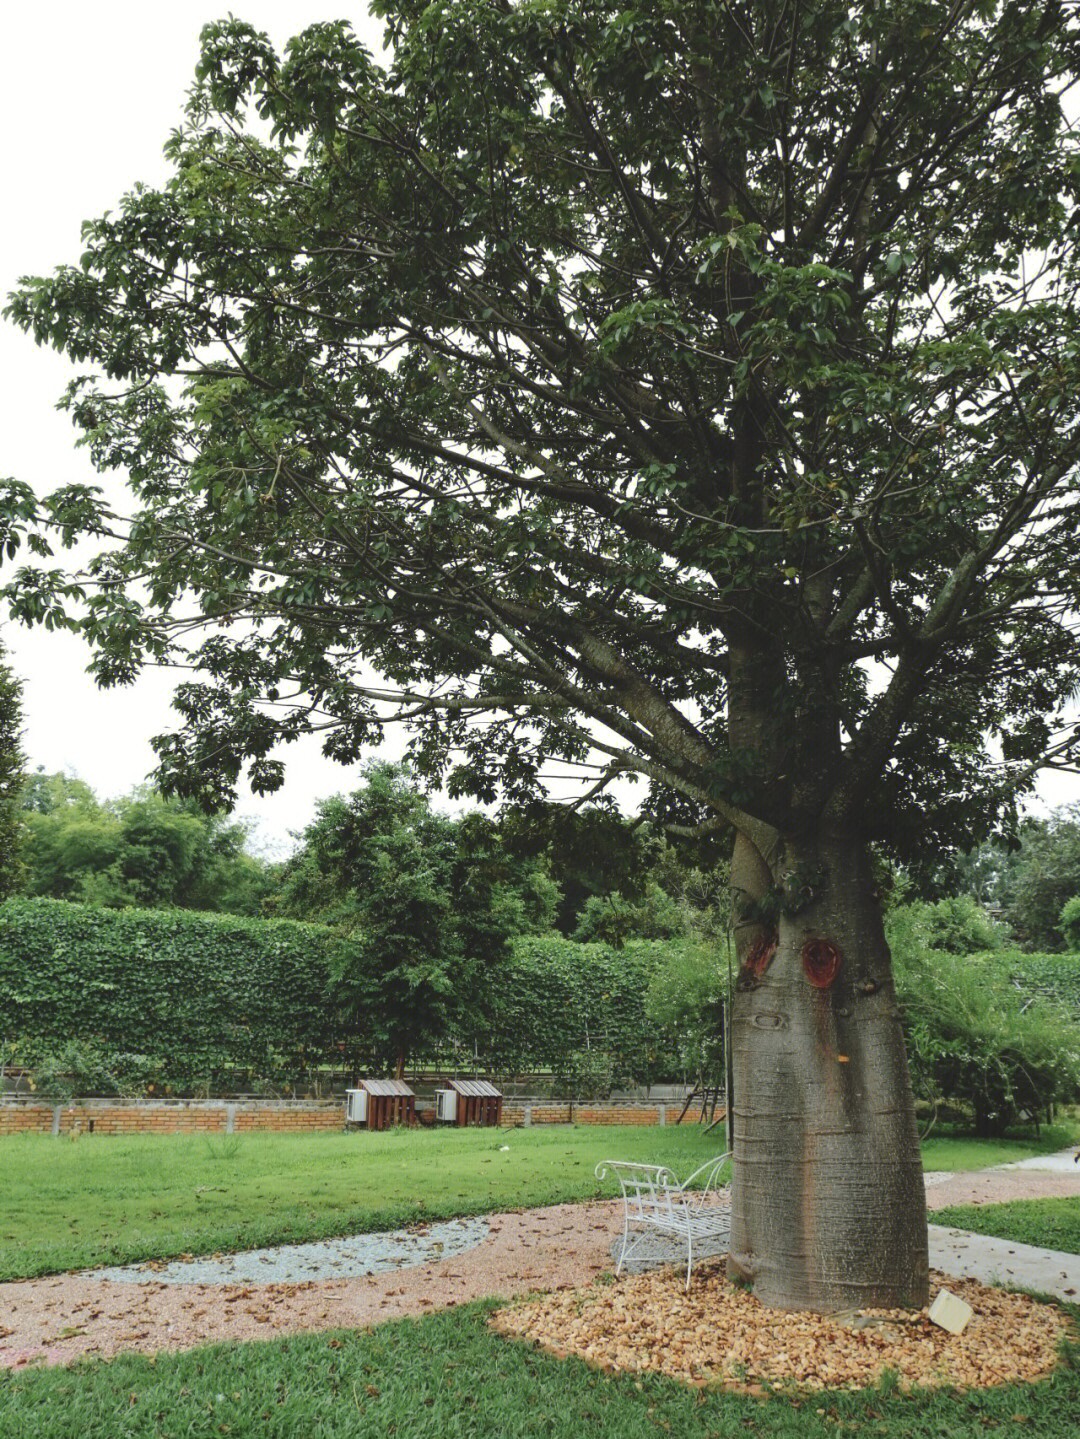 猴面包树,这是一颗非同寻常的巨树,吸引所有看到它的人都忍不住要停